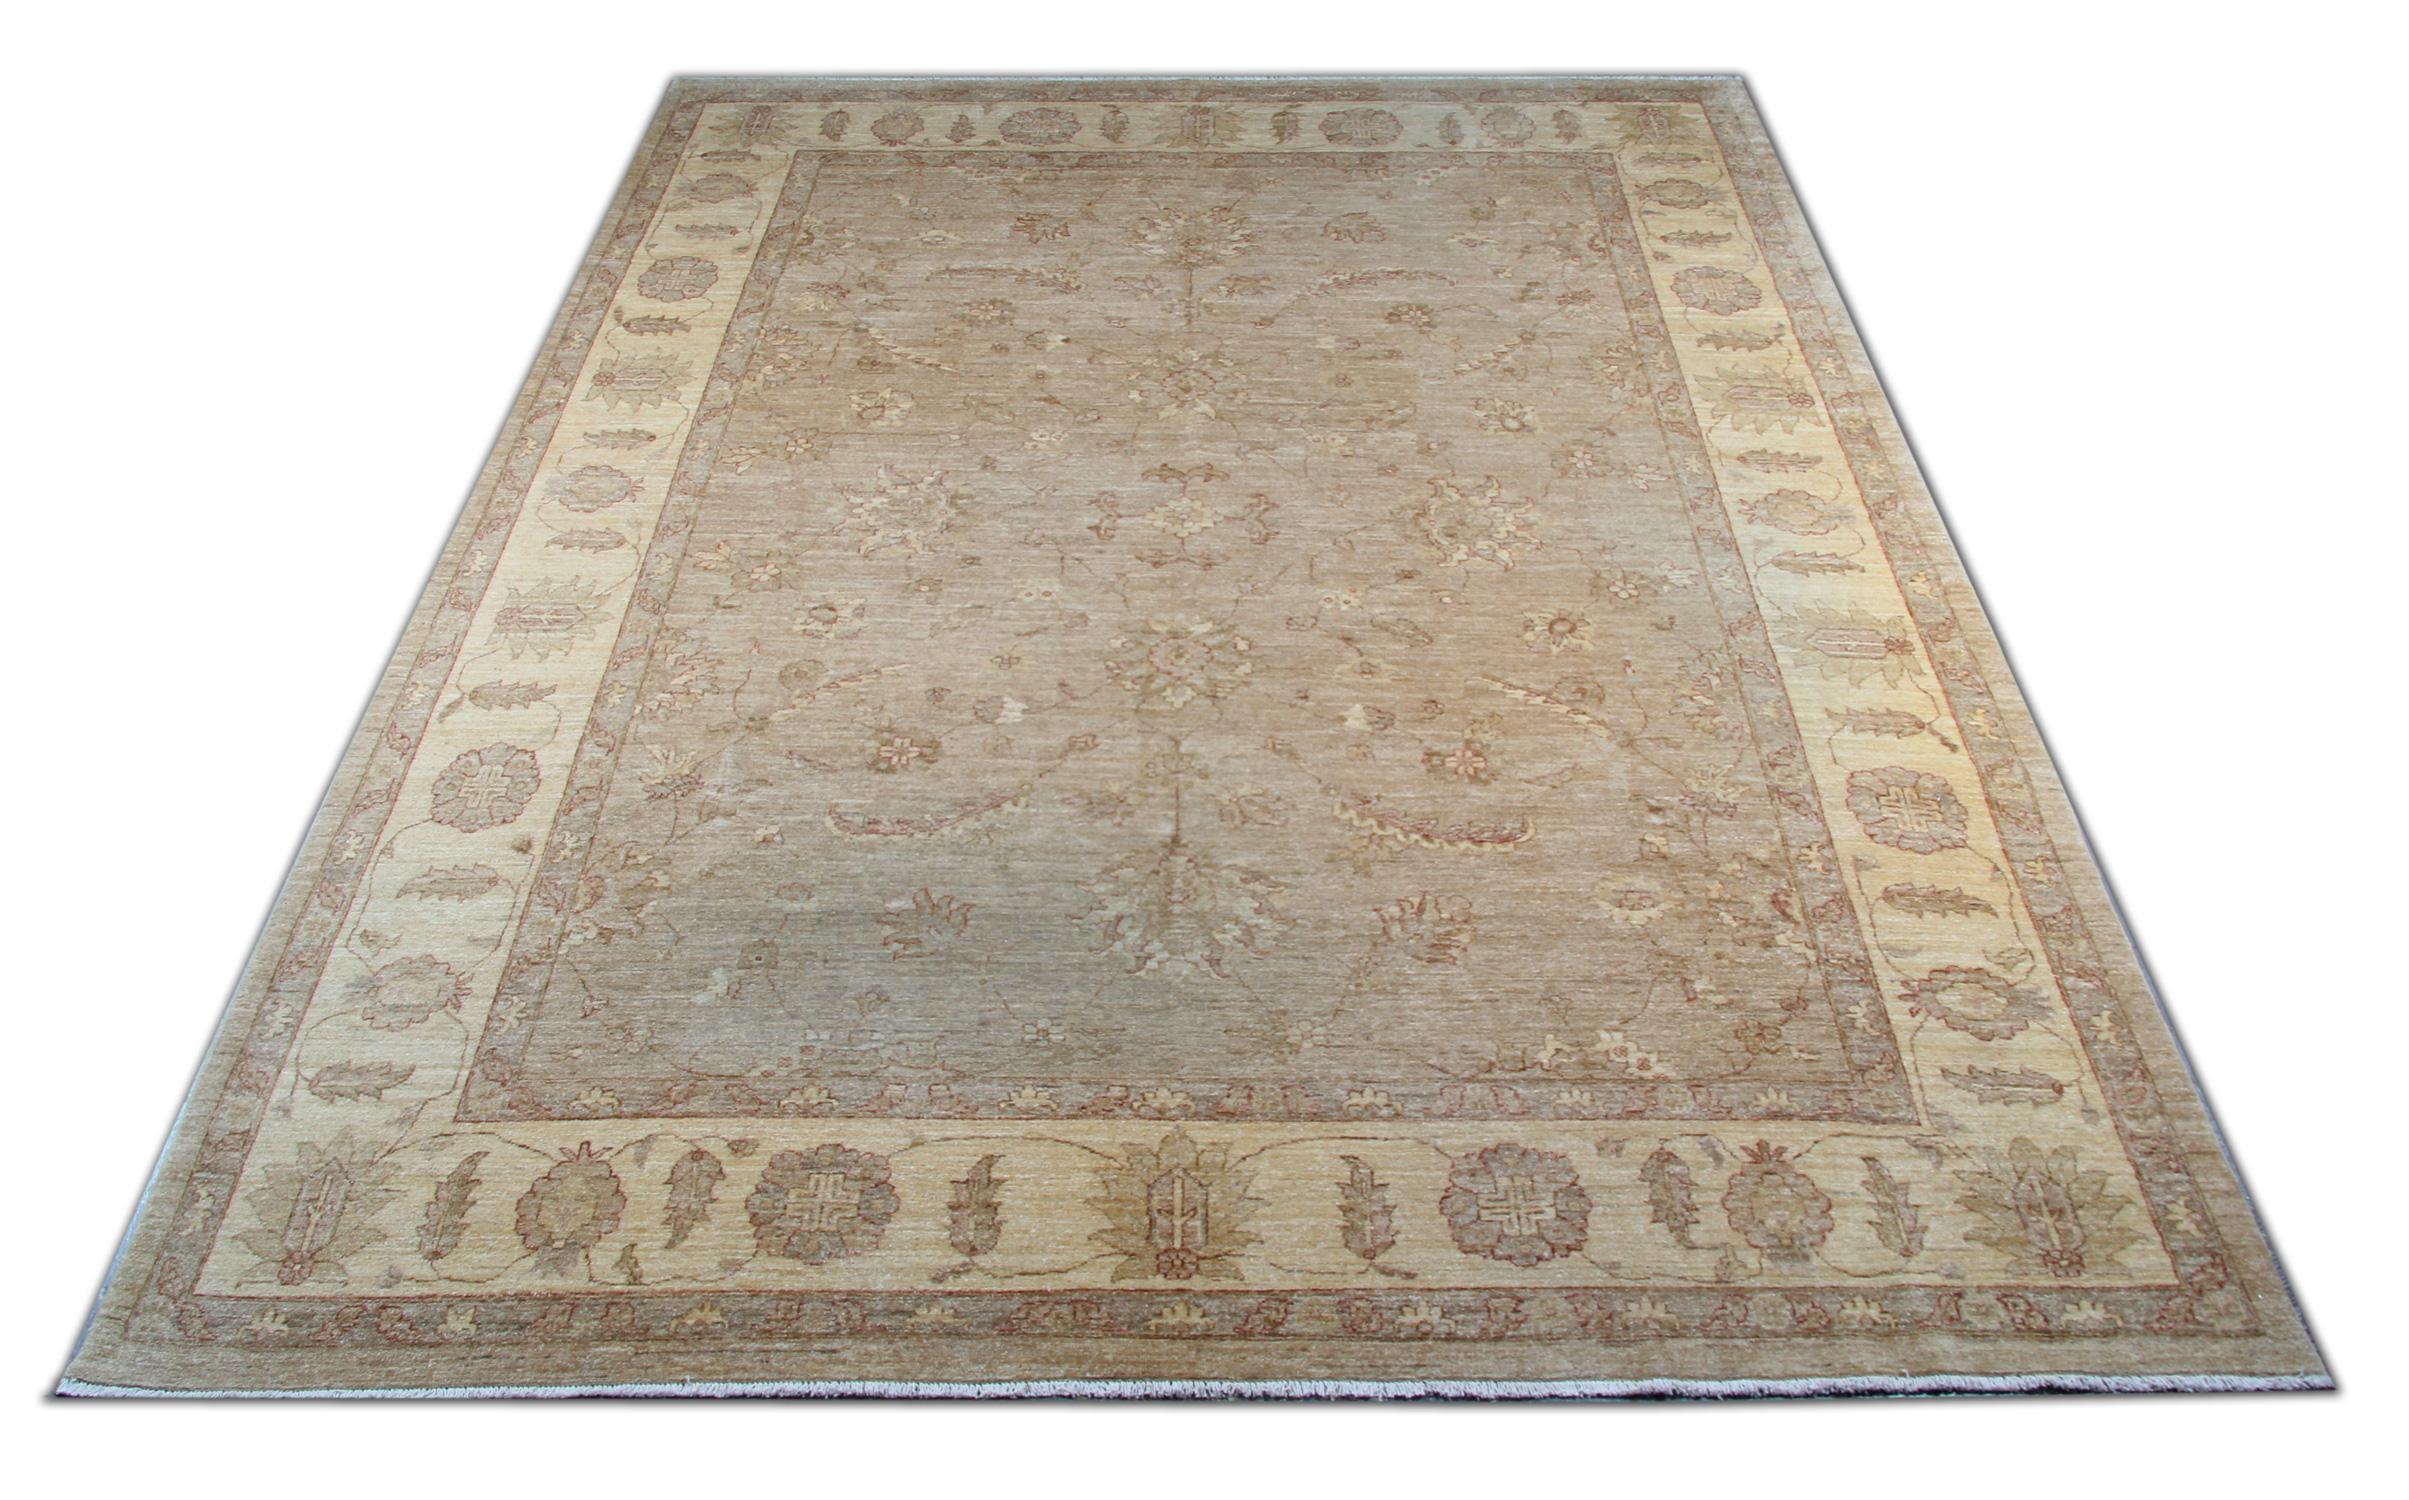 Dieser beeindruckende elfenbeinfarbene afghanische Teppich aus dem 21. Jahrhundert zeigt ein durchgängiges geometrisches Muster mit ineinander verschlungenen Medaillons und einer sehr detaillierten Bordüre. Dieses schöne, filigrane Design wertet